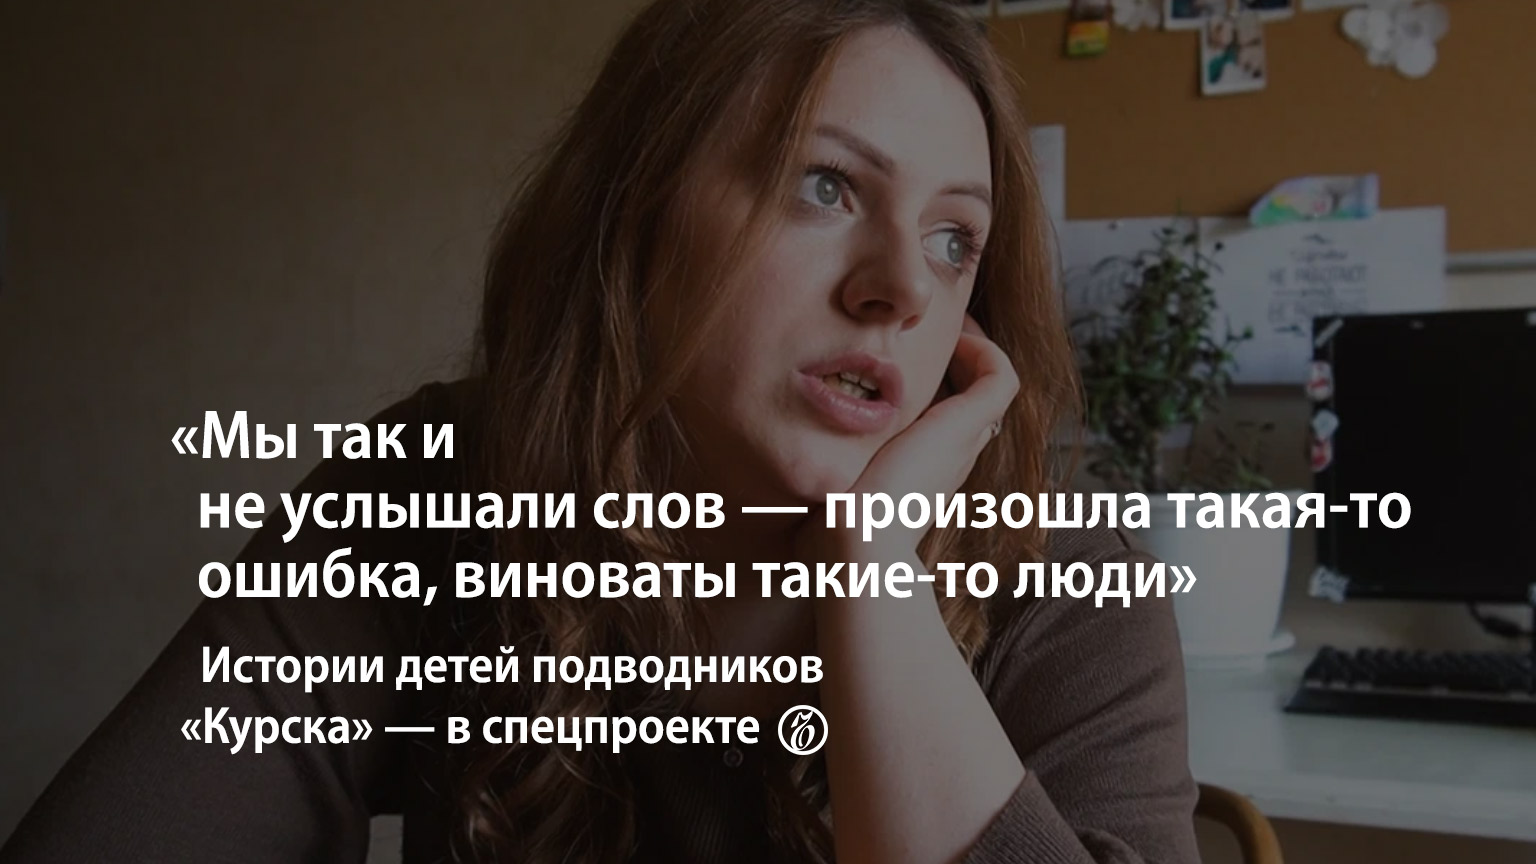 Дочь подводника «Курска»: «Мне тяжело жить, не зная, при каких обстоятельствах погиб отец»